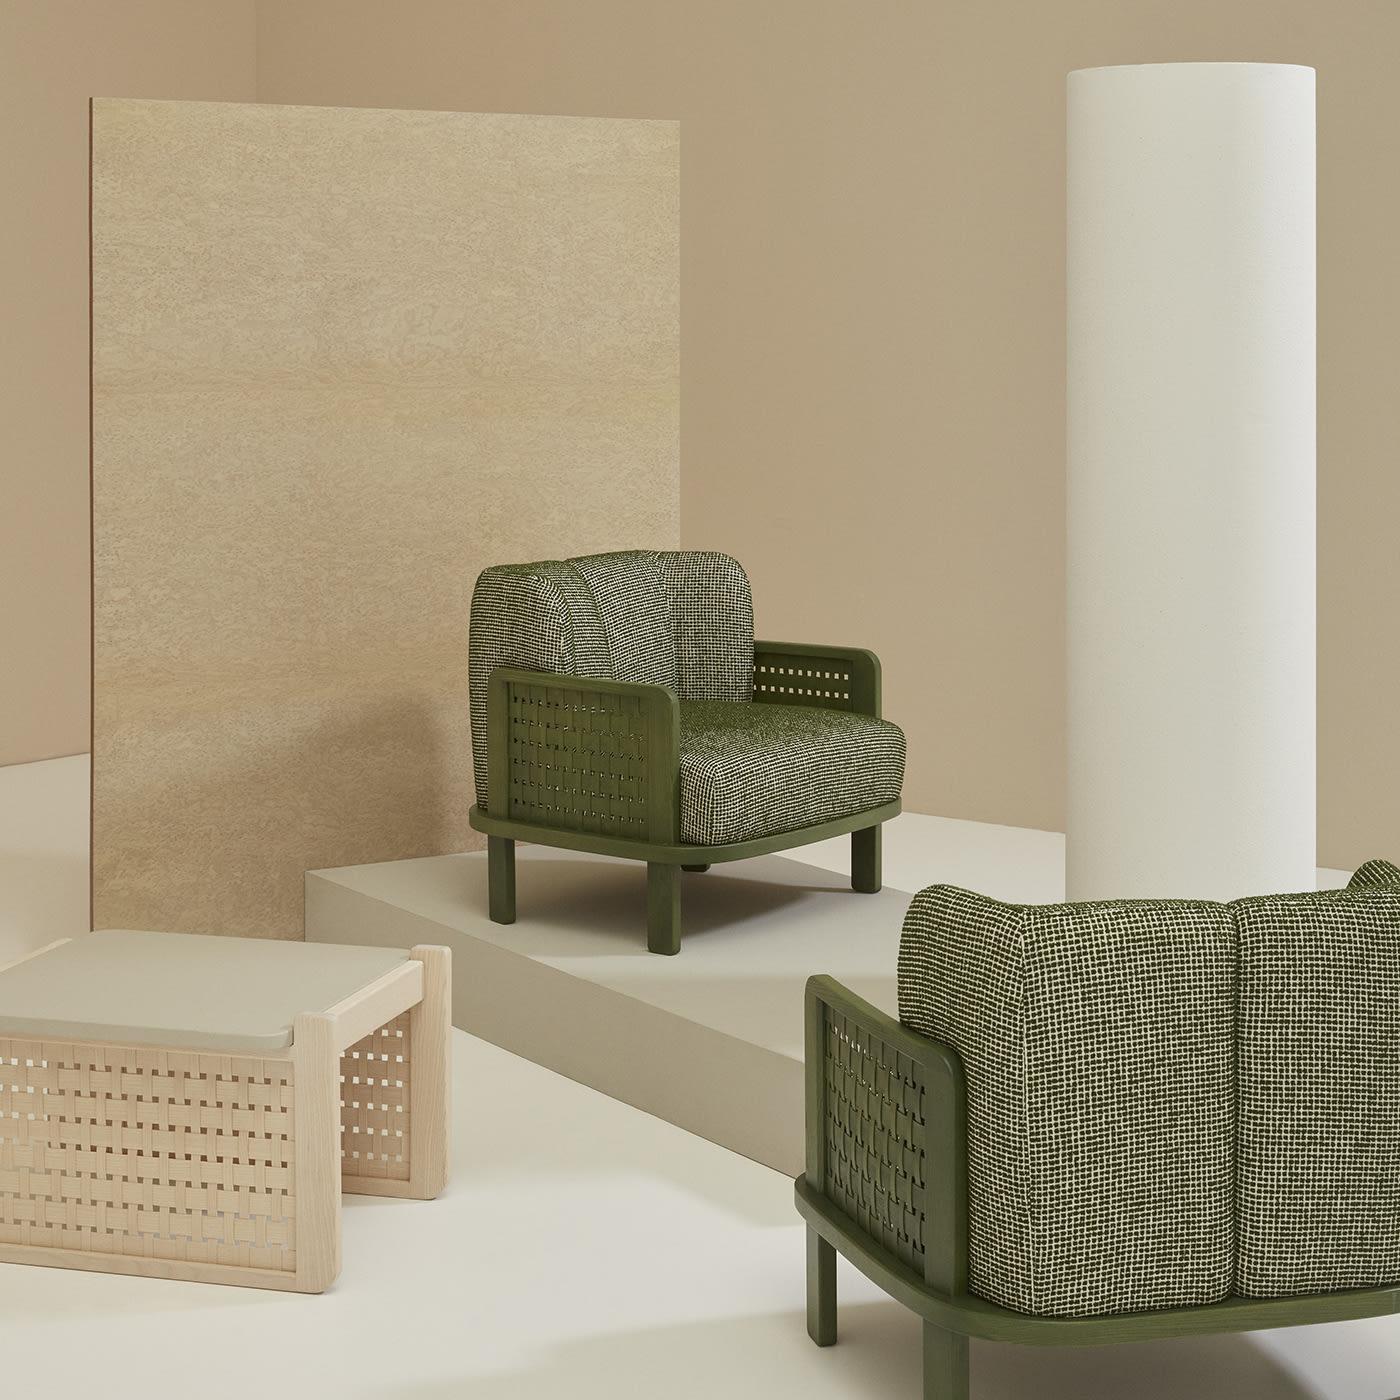 Dieser ebenso kühne wie kompakte Sessel ist eine raffinierte Ergänzung für moderne Interieurs mit Erdtönen. Das Gestell aus chromgrün (RAL 6020) lackiertem Eschenholz zeichnet sich durch abgerundete Ecken und herausragende Seiten aus, die ein